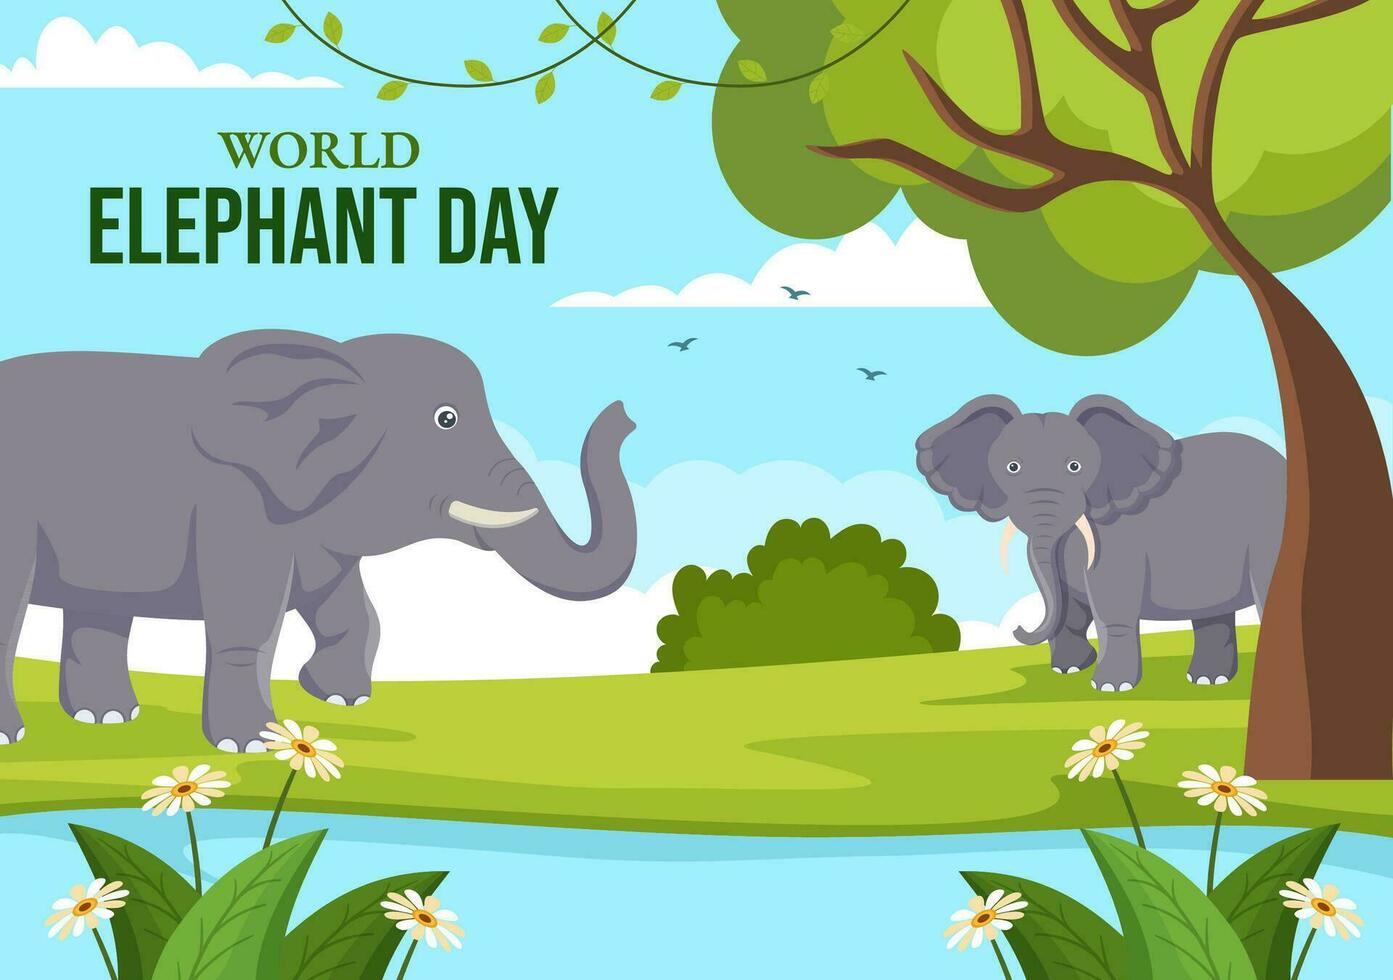 mundo elefante día vector ilustración en 12 agosto con elefantes animales para salvación esfuerzos y conservación en dibujos animados mano dibujado plantillas